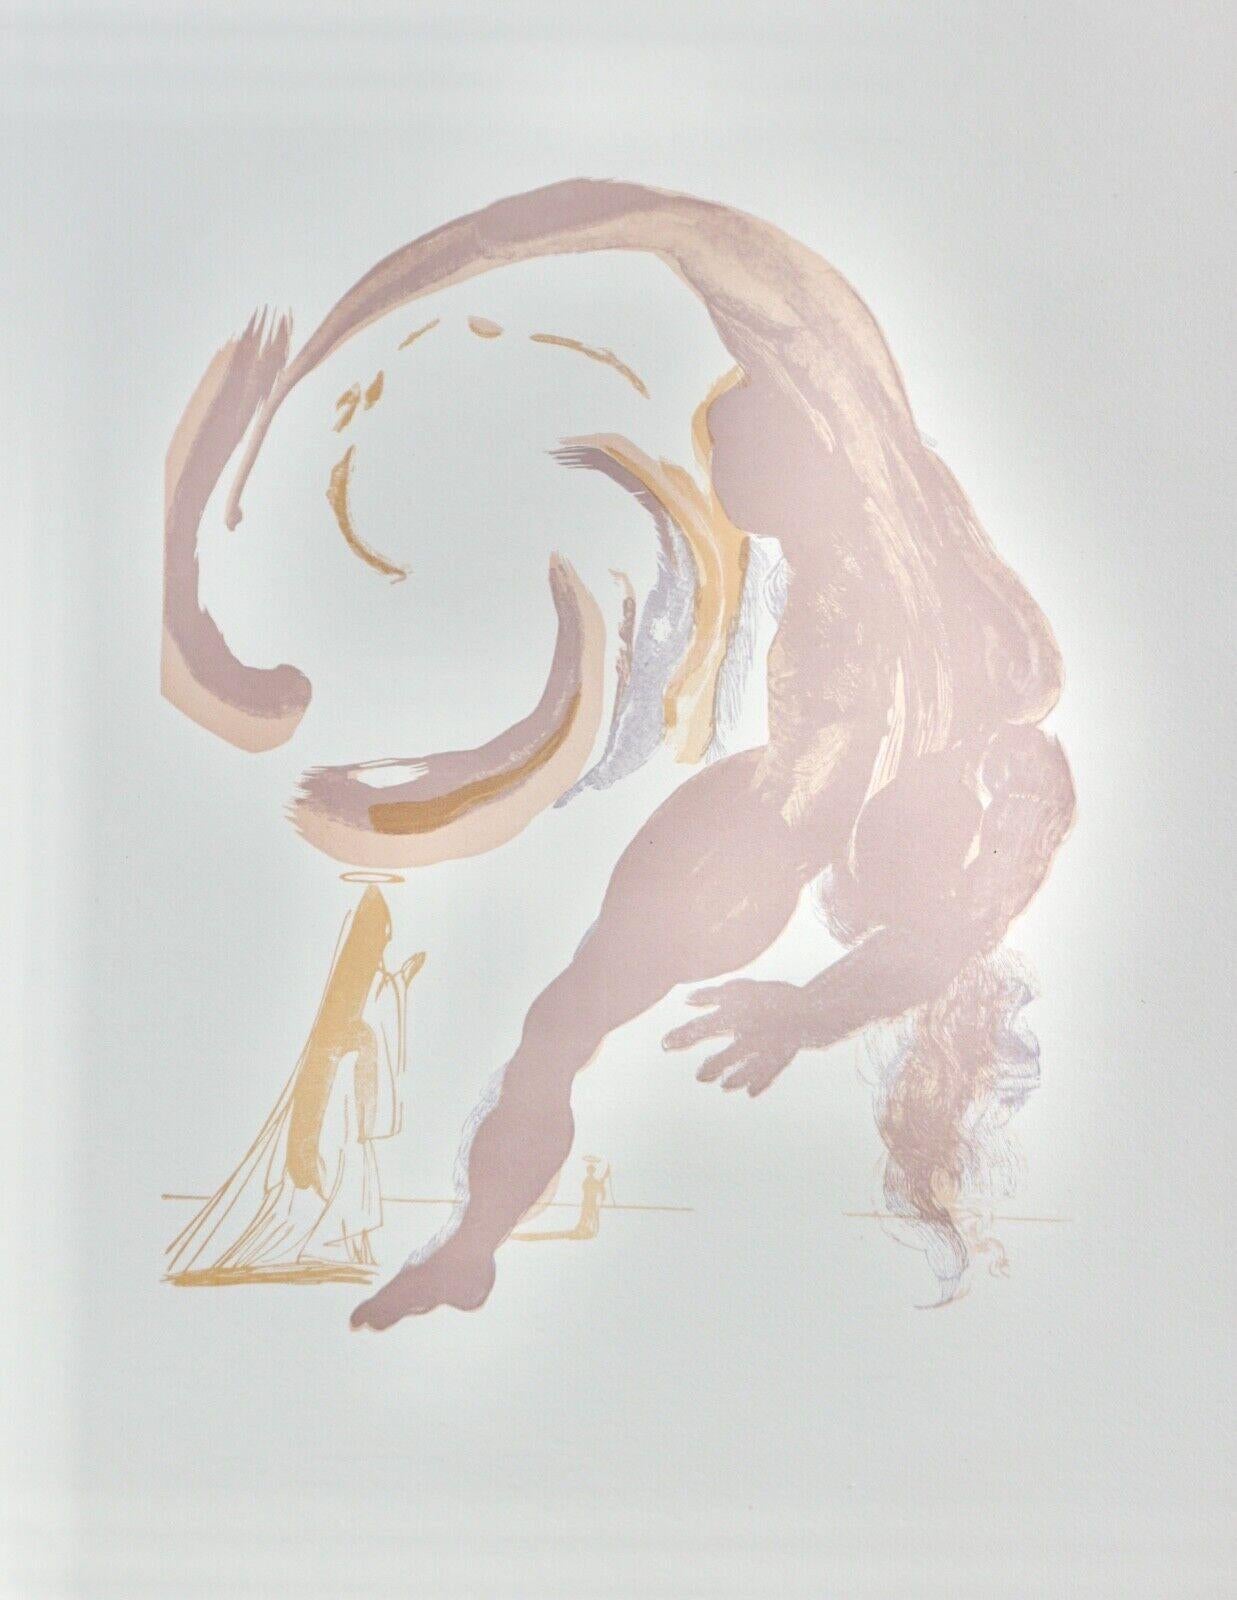 Göttliche Komödie Fegefeuer Canto 18 Dekomposition (2 Pieces) (Surrealismus), Print, von Salvador Dalí